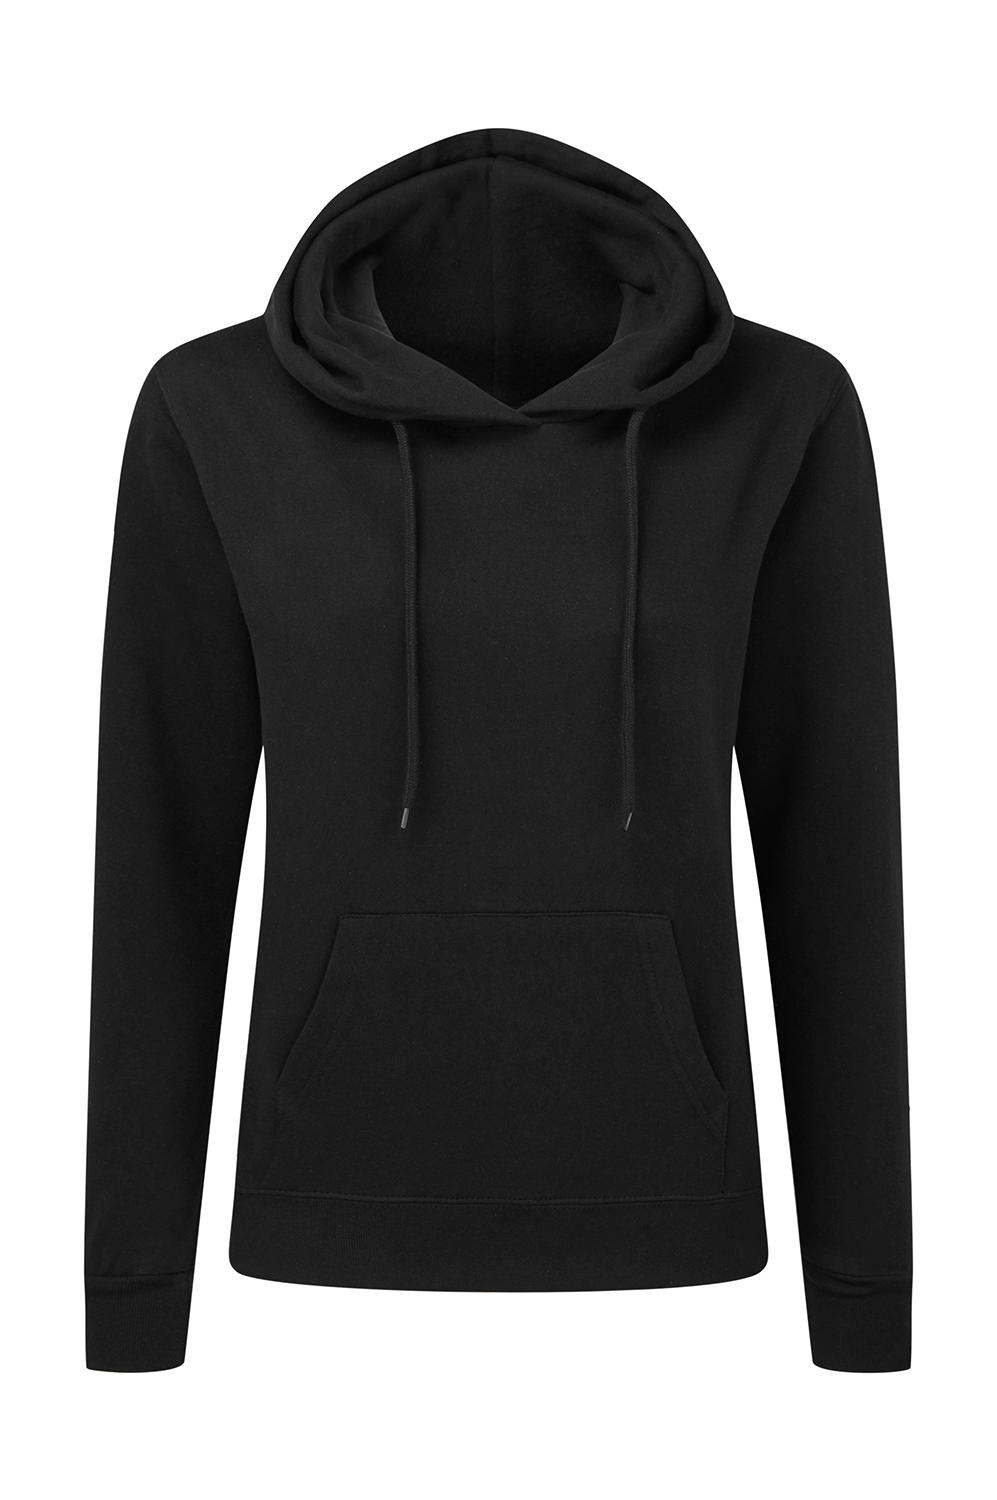  Ladies Hooded Sweatshirt in Farbe Dark Black